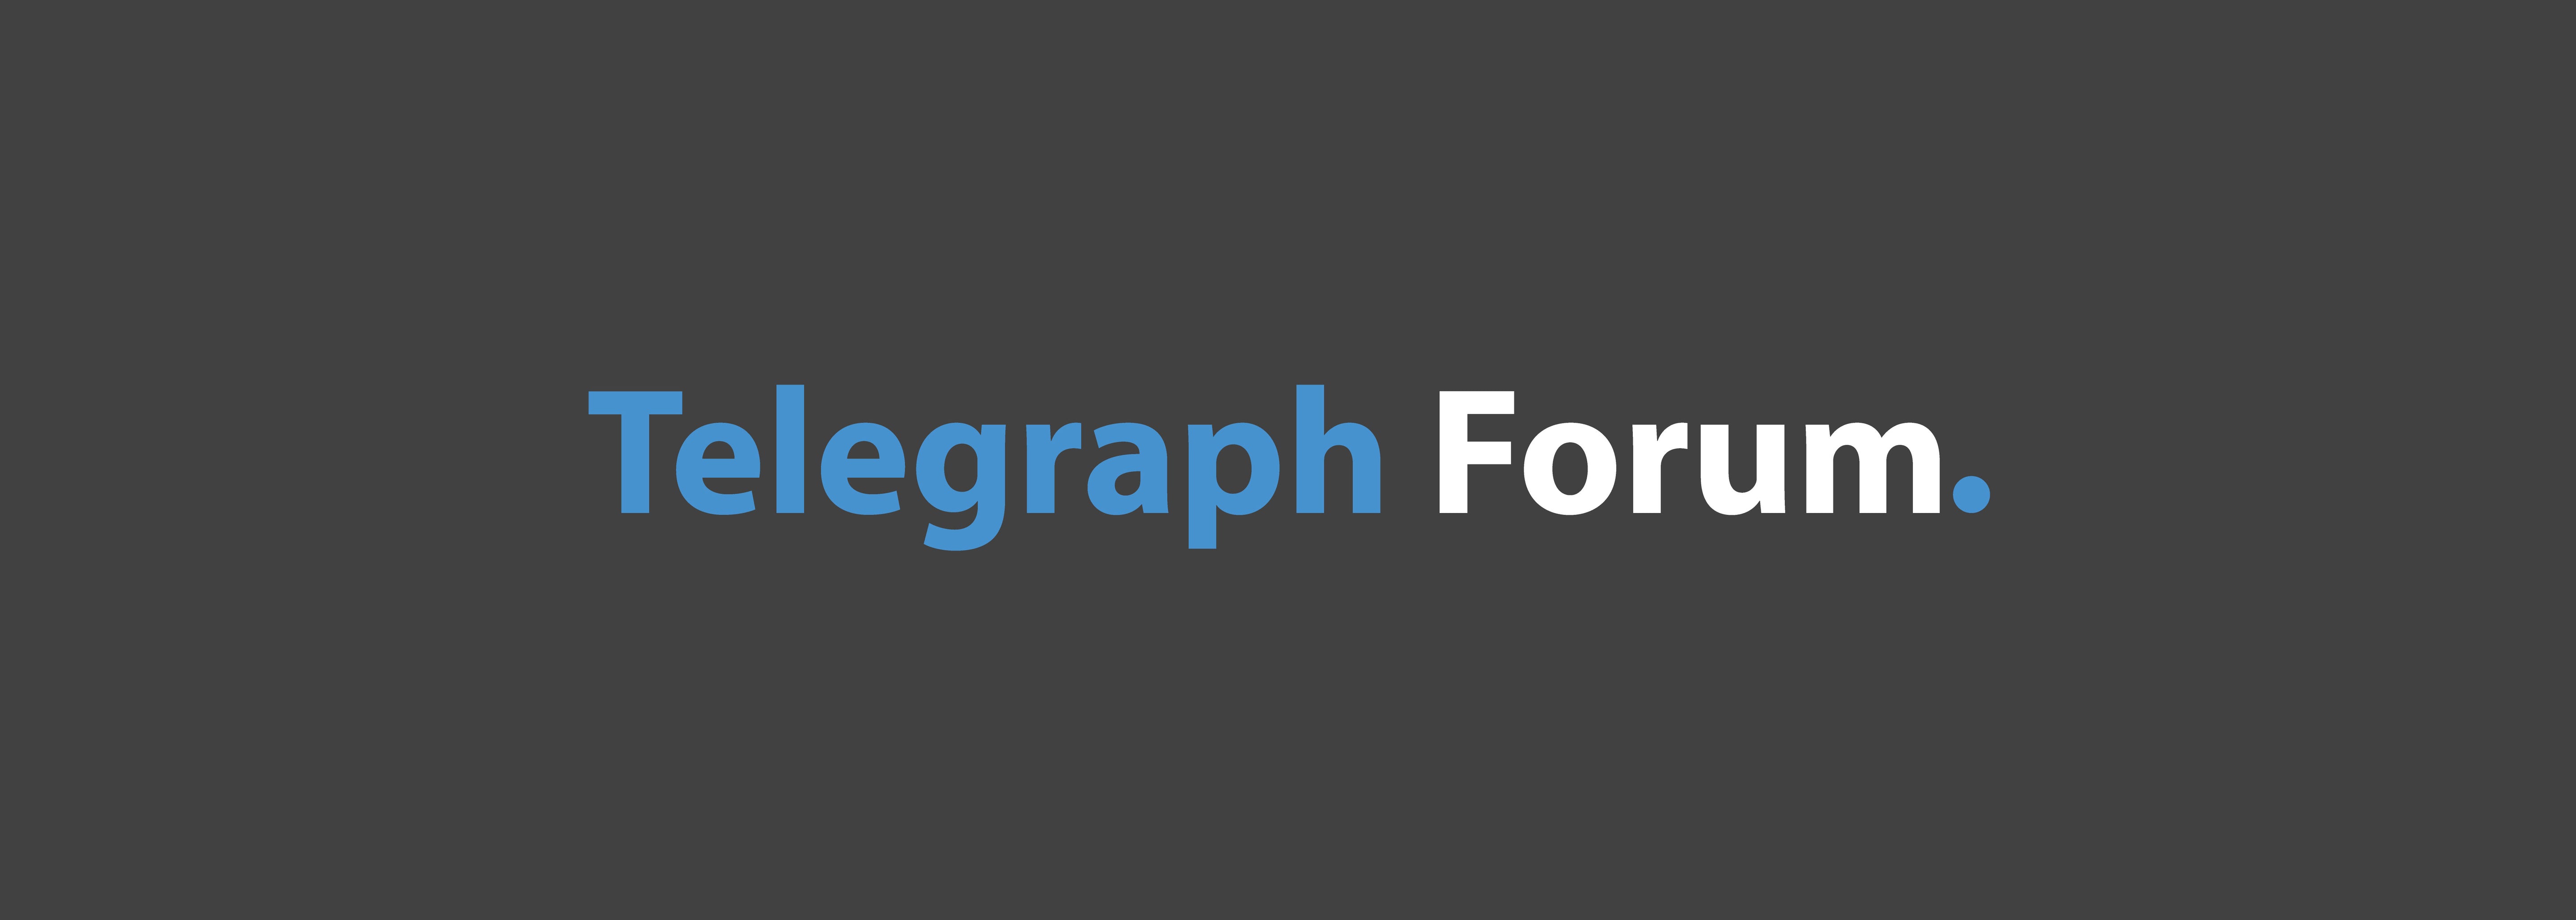 Bucyrus Telegraph Forum